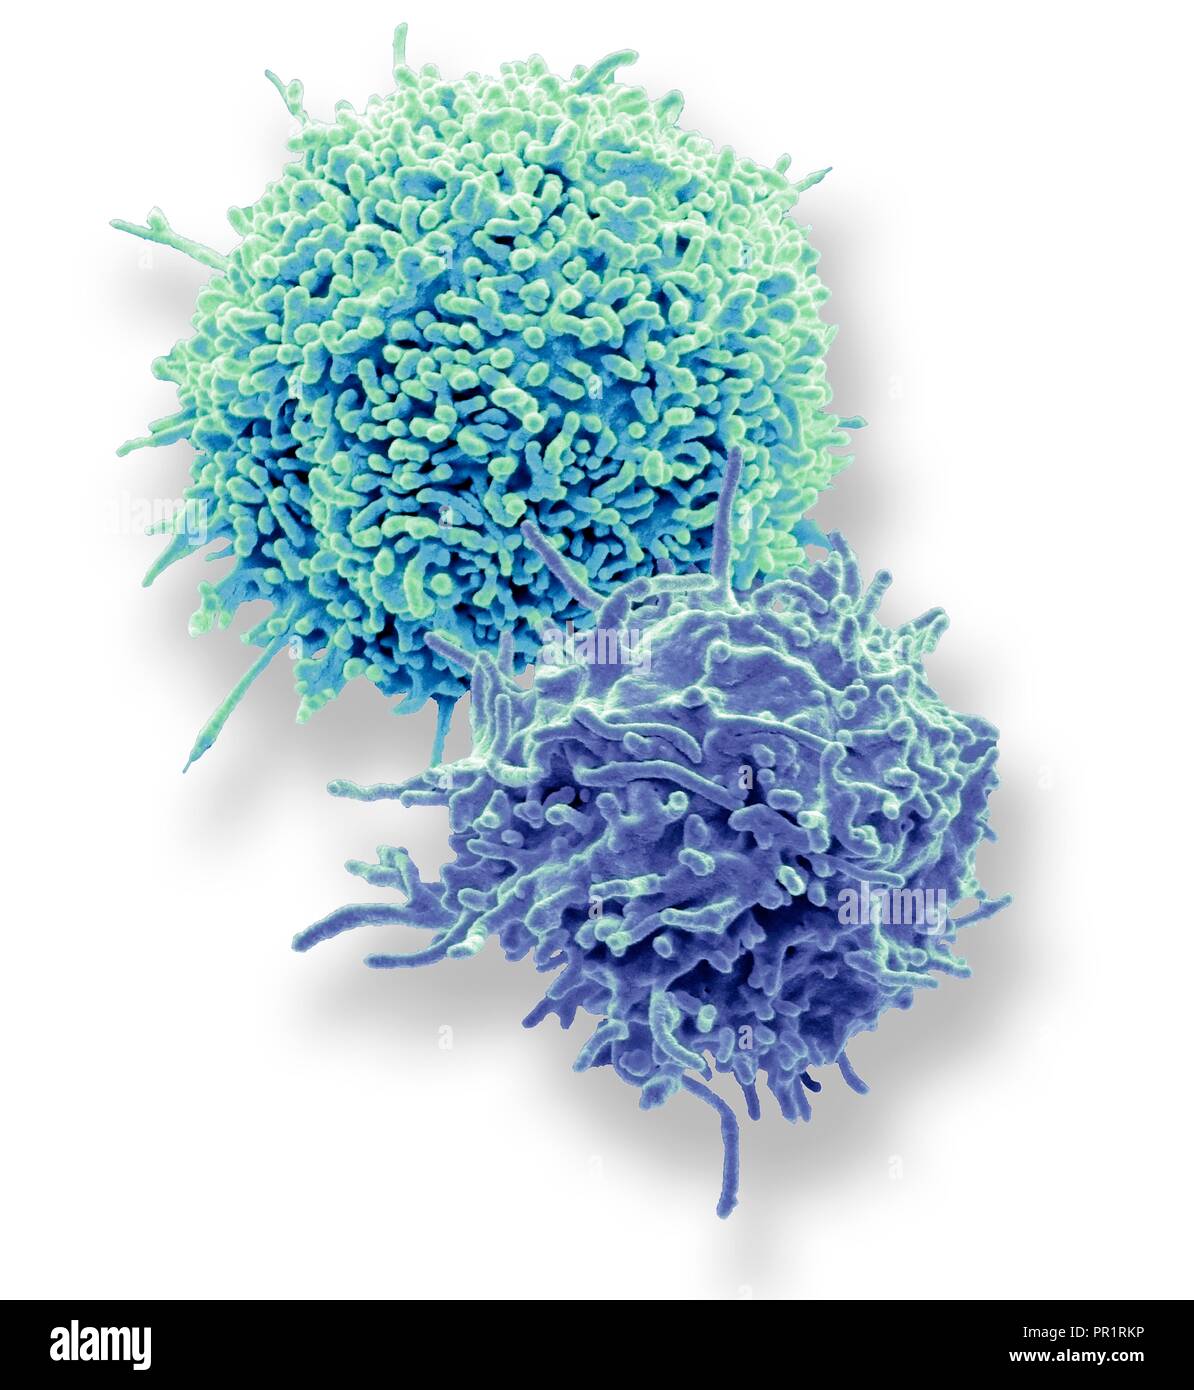 Ruhende T-Lymphozyten. Farbige Scanning Electron Micrograph (SEM) Der ruhende T-Lymphozyten aus menschlichem Blut Probe. T-Lymphozyten, T-Zellen gehören zu den weißen Blutkörperchen und Komponenten des Immunsystems des Körpers. Sie reifen im Thymus. T-Lymphozyten erkennen einen bestimmten Standort auf der Oberfläche von Krankheitserregern oder Fremdkörper (Antigene), bind, und aktiviert werden Antikörper oder Zellen zu produzieren, das Antigen zu beseitigen. Muster mit freundlicher Genehmigung von Professor Greg Türme, University College London, UK. Vergrößerung: x7000 bei 10 Zentimeter Breite gedruckt. Stockfoto